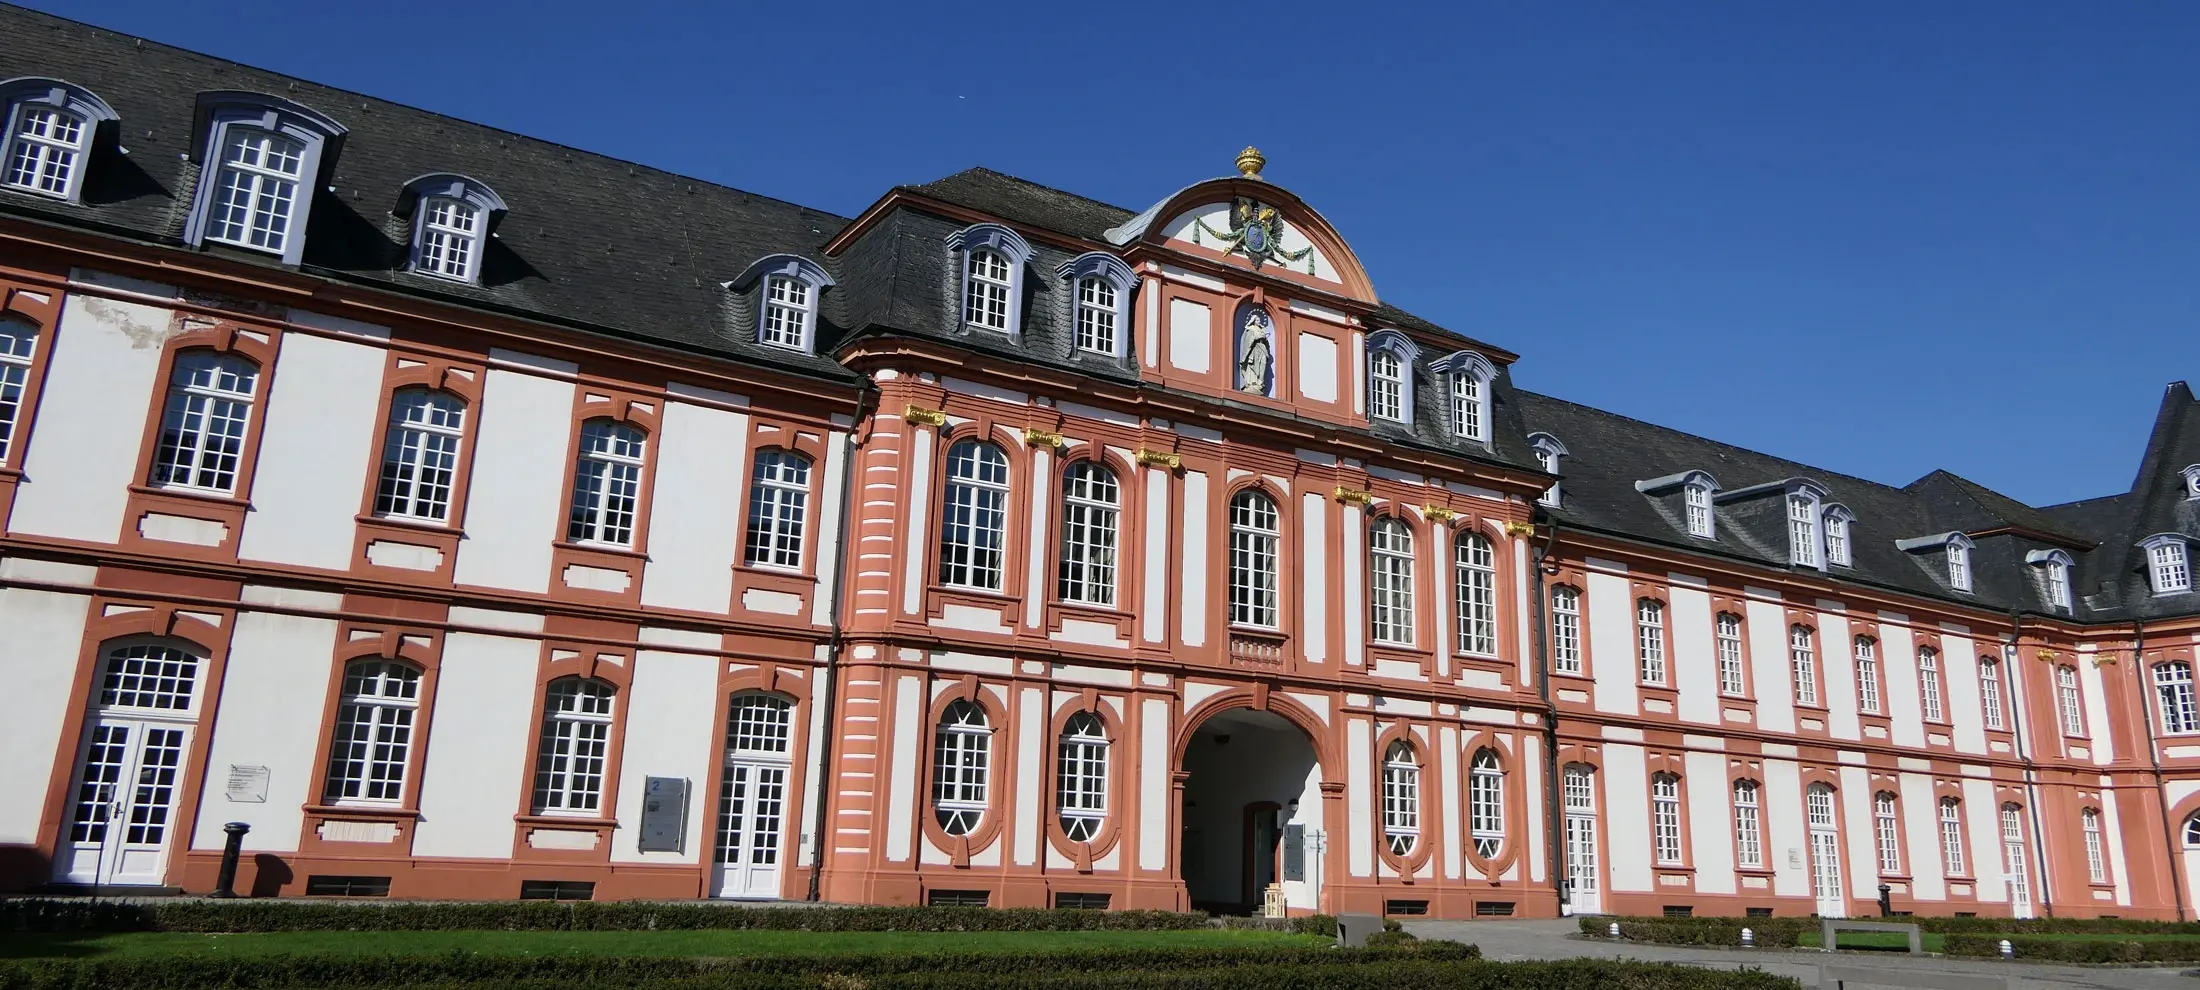 Bild der Abtei Brauweiler, eine der bekanntesten Immobilien in Pulheim und der gesamten Region. Zu sehen ist das im Westen befindliche Prälaturgebäude des ehemaligen Benediktinerklosters. Ansicht: vom Innenhof aus betrachtet.